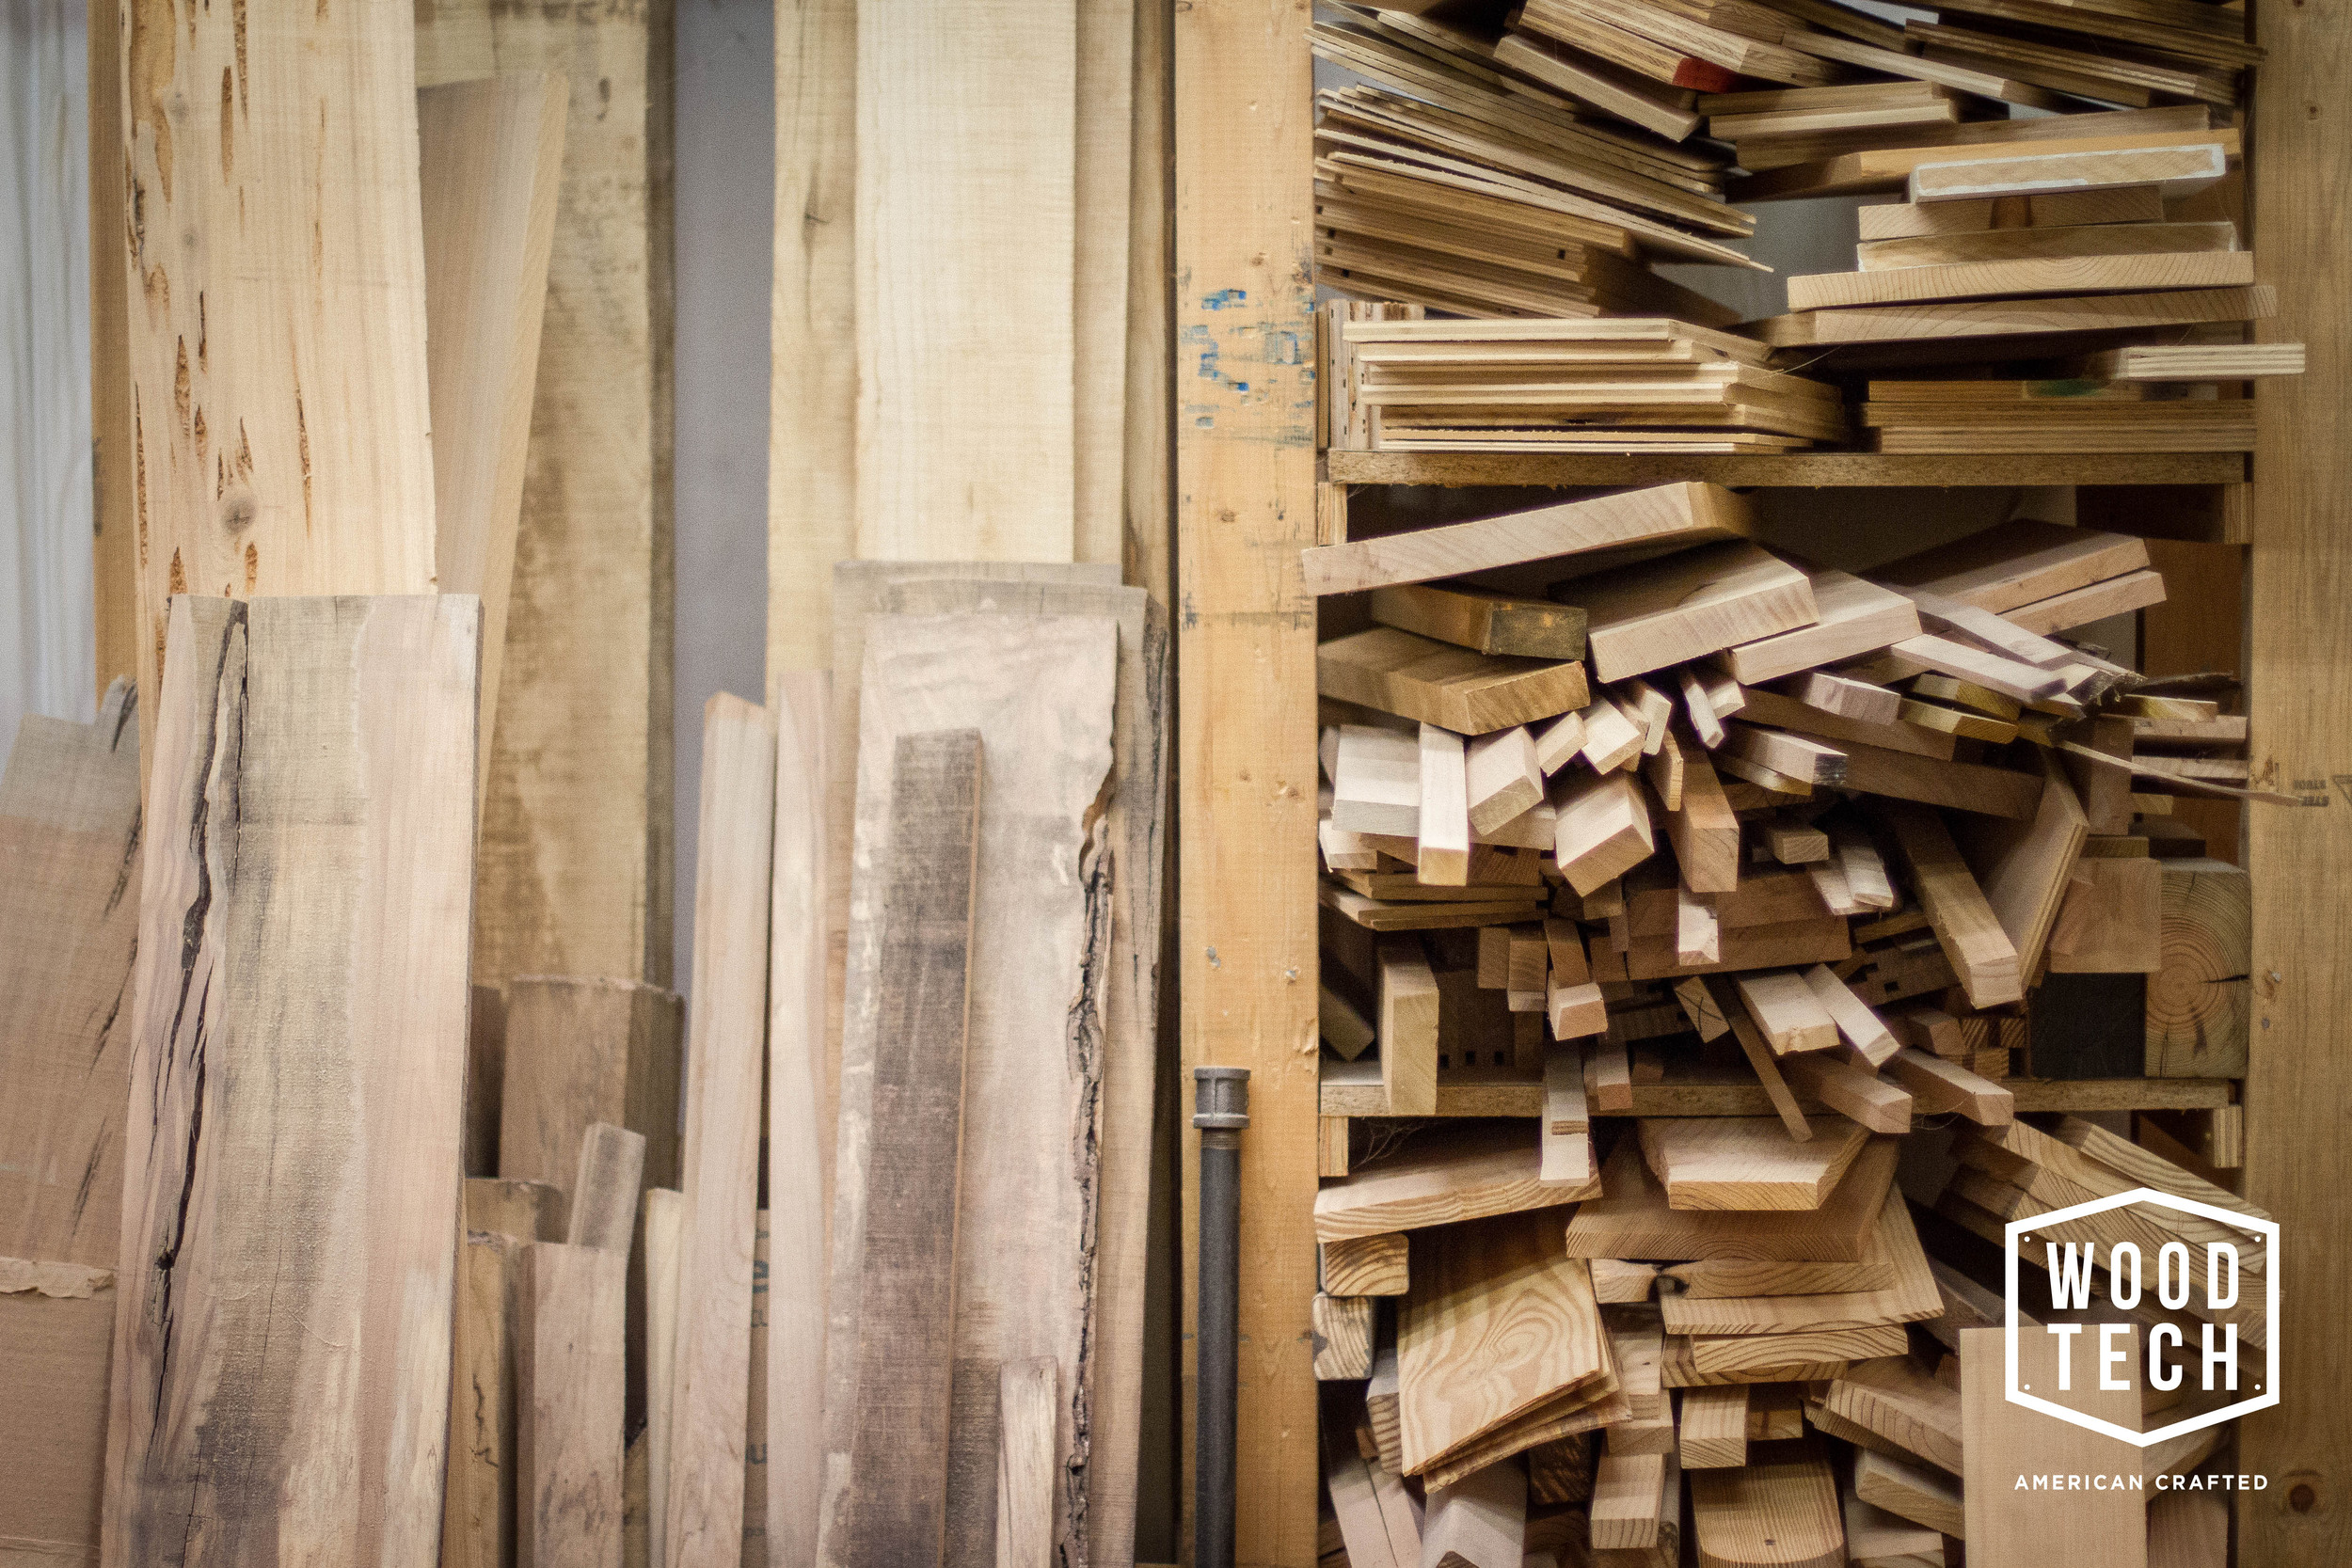 Woodtech wood stock